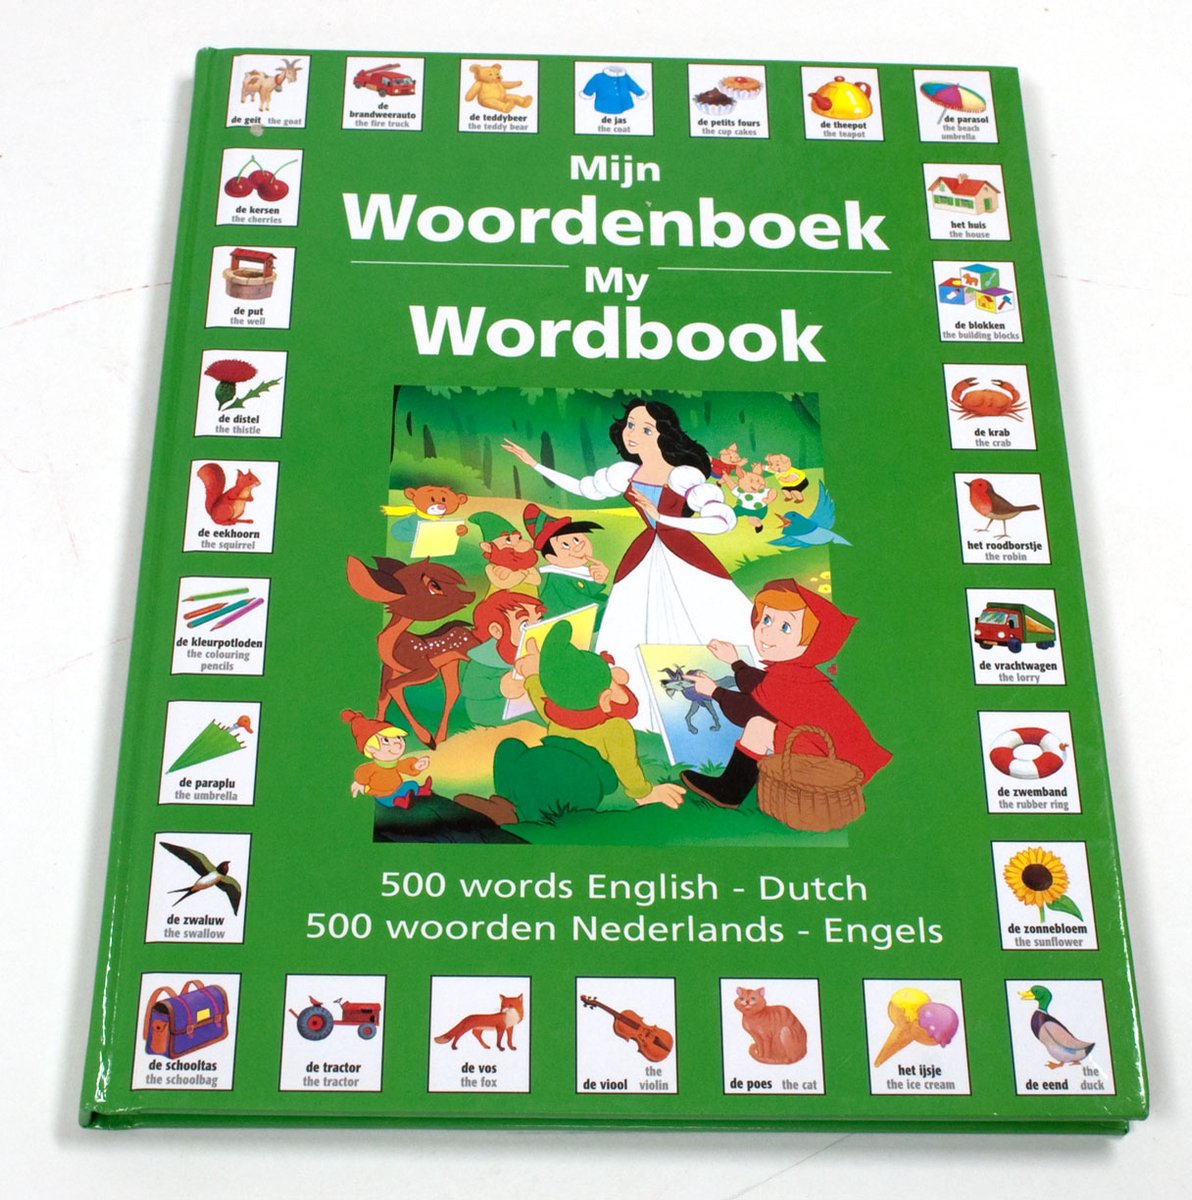 Mijn Woordenboek - My Wordbook - 500 Woorden Words